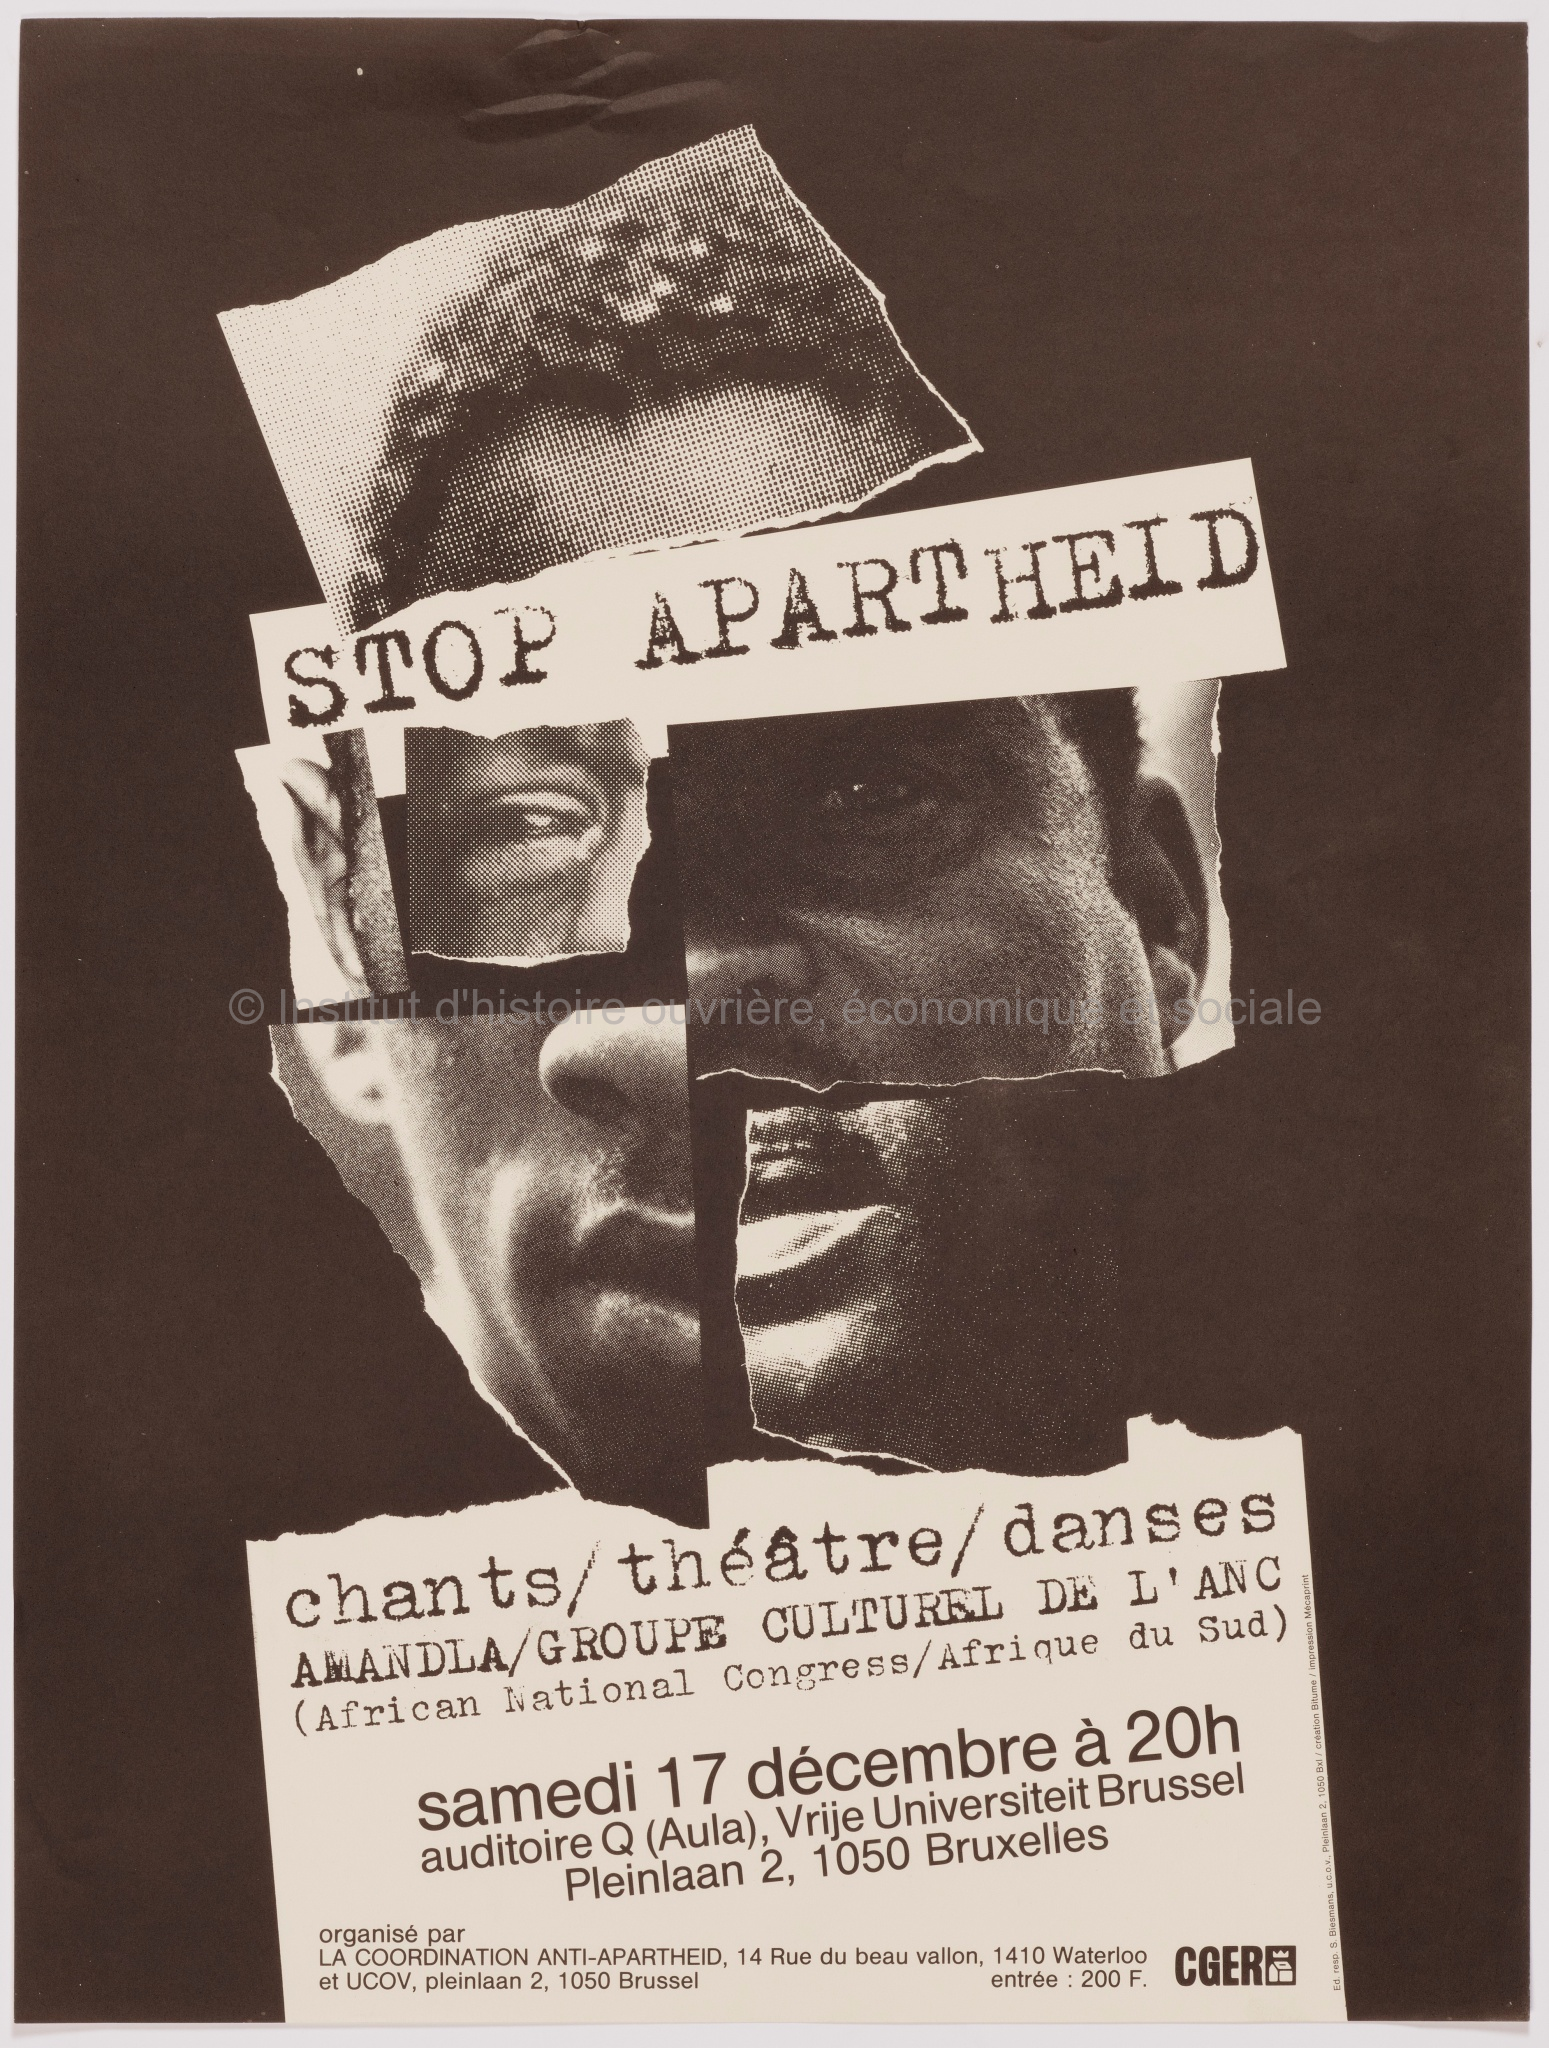 Stop Apartheid. Chants/théâtre/danses. Amandla/Groupe culturel de l'ANC (African national congress/Afrique du Sud)